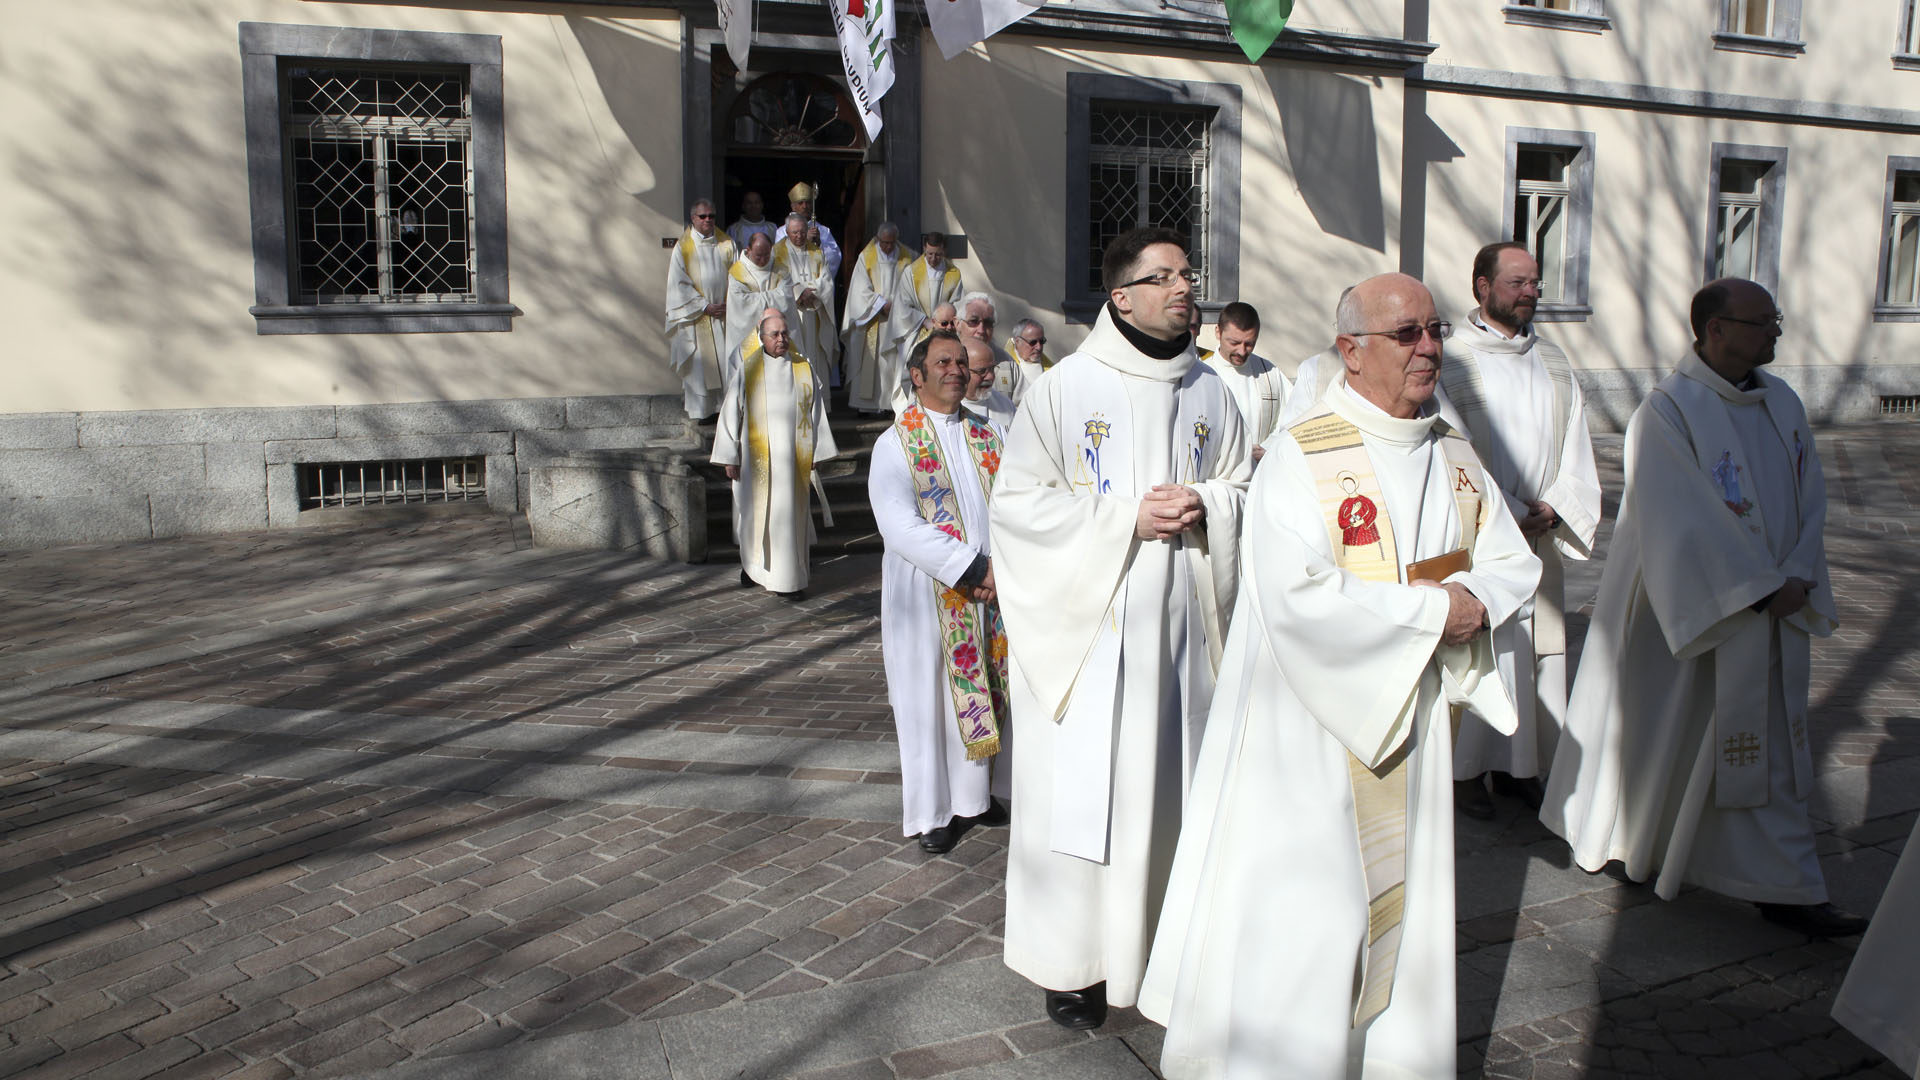 Les nominations du diocèse de Sion entreront en vigueur le 1er septembre 2019. | © B. Hallet